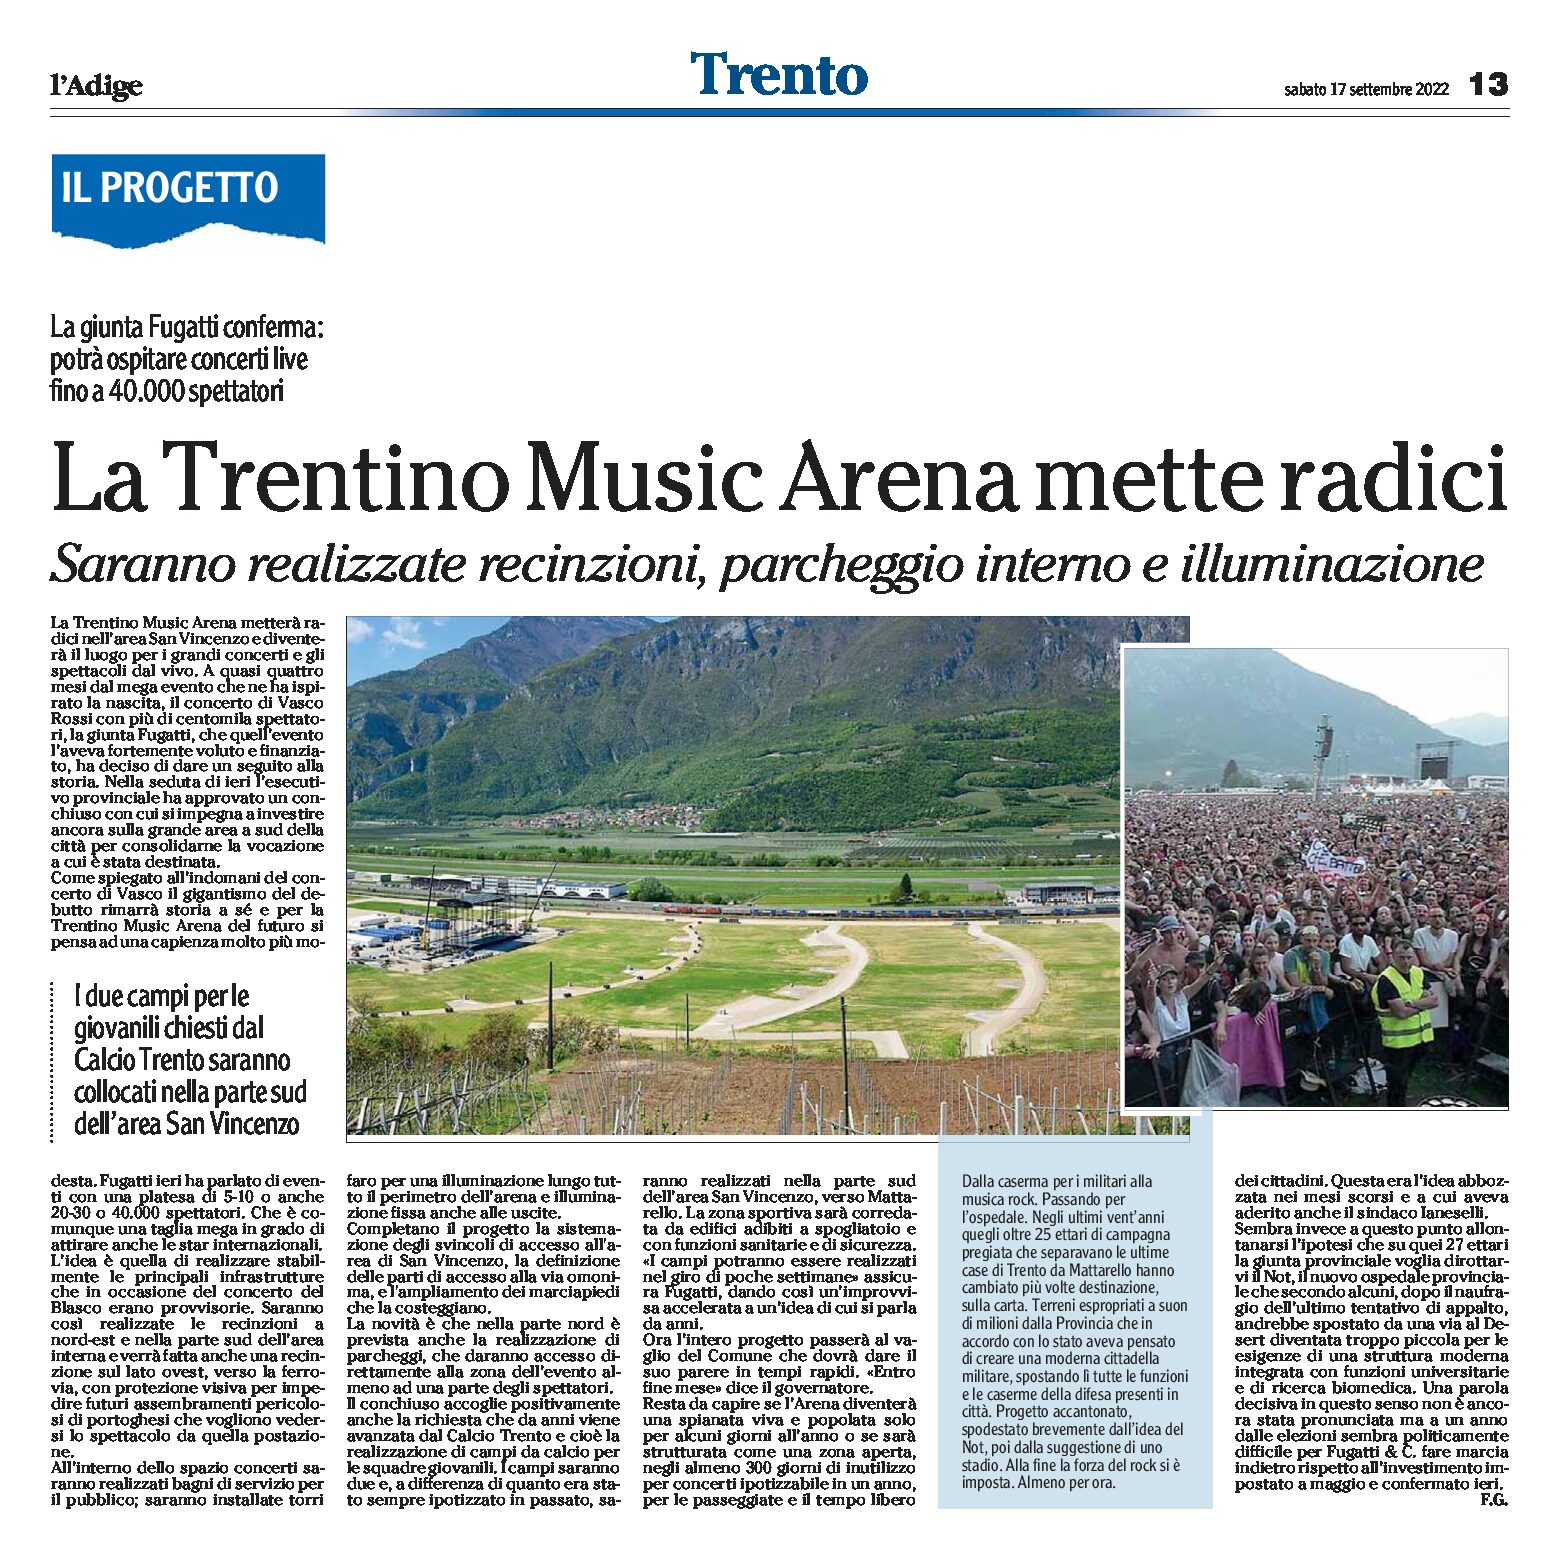 Trento: la Trentino Music Arena mette radici